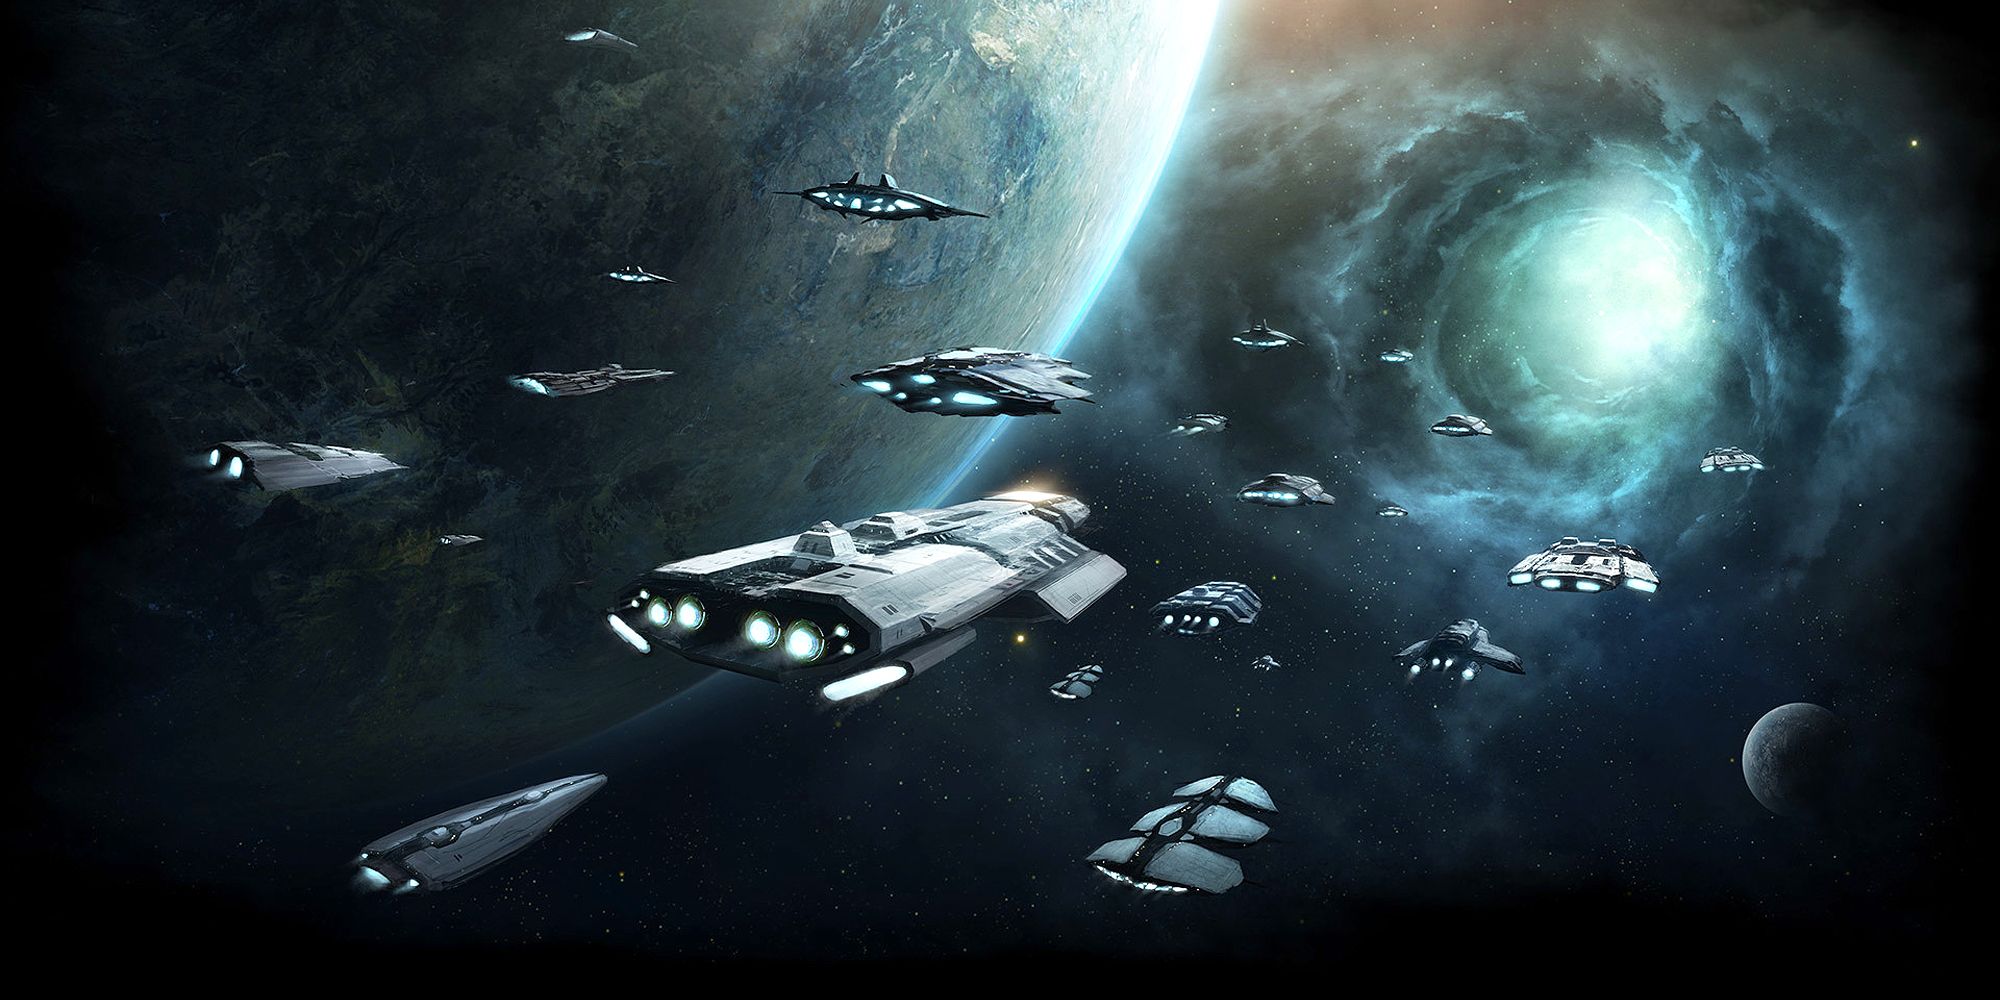 Stellaris ships flying through space